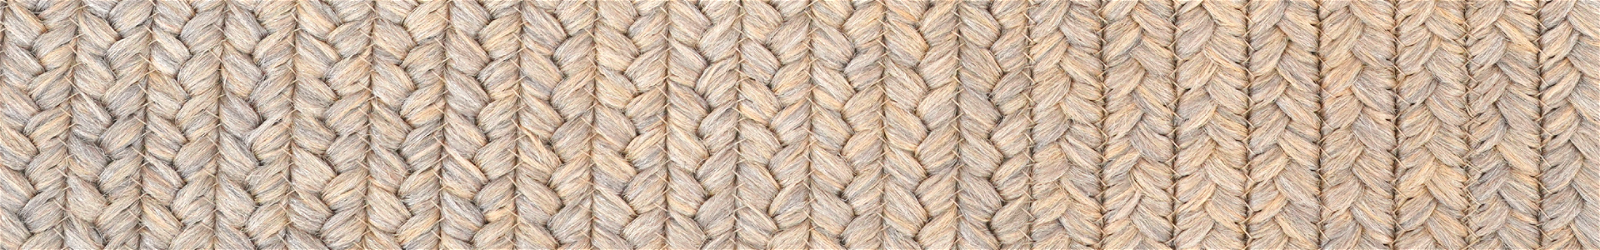 10 x 10 - Jute - Brown Braided Rugs